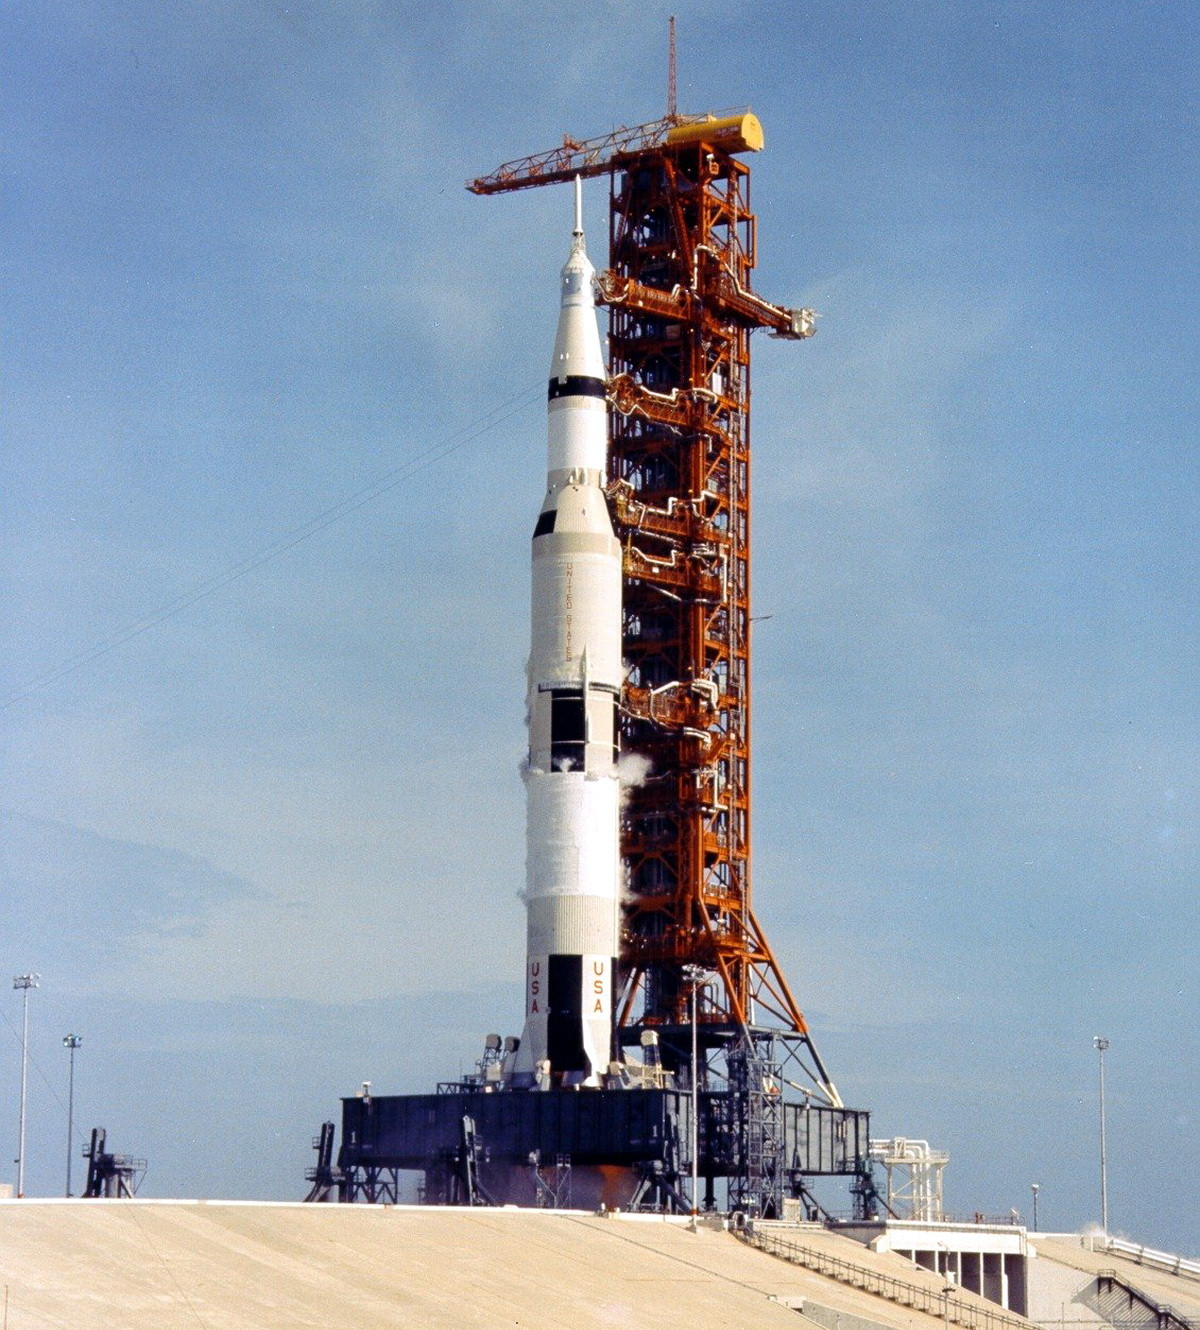 Старт «Аполлона-11» состоялся в среду, 16 июля 1969 года, в 13:32 UTC